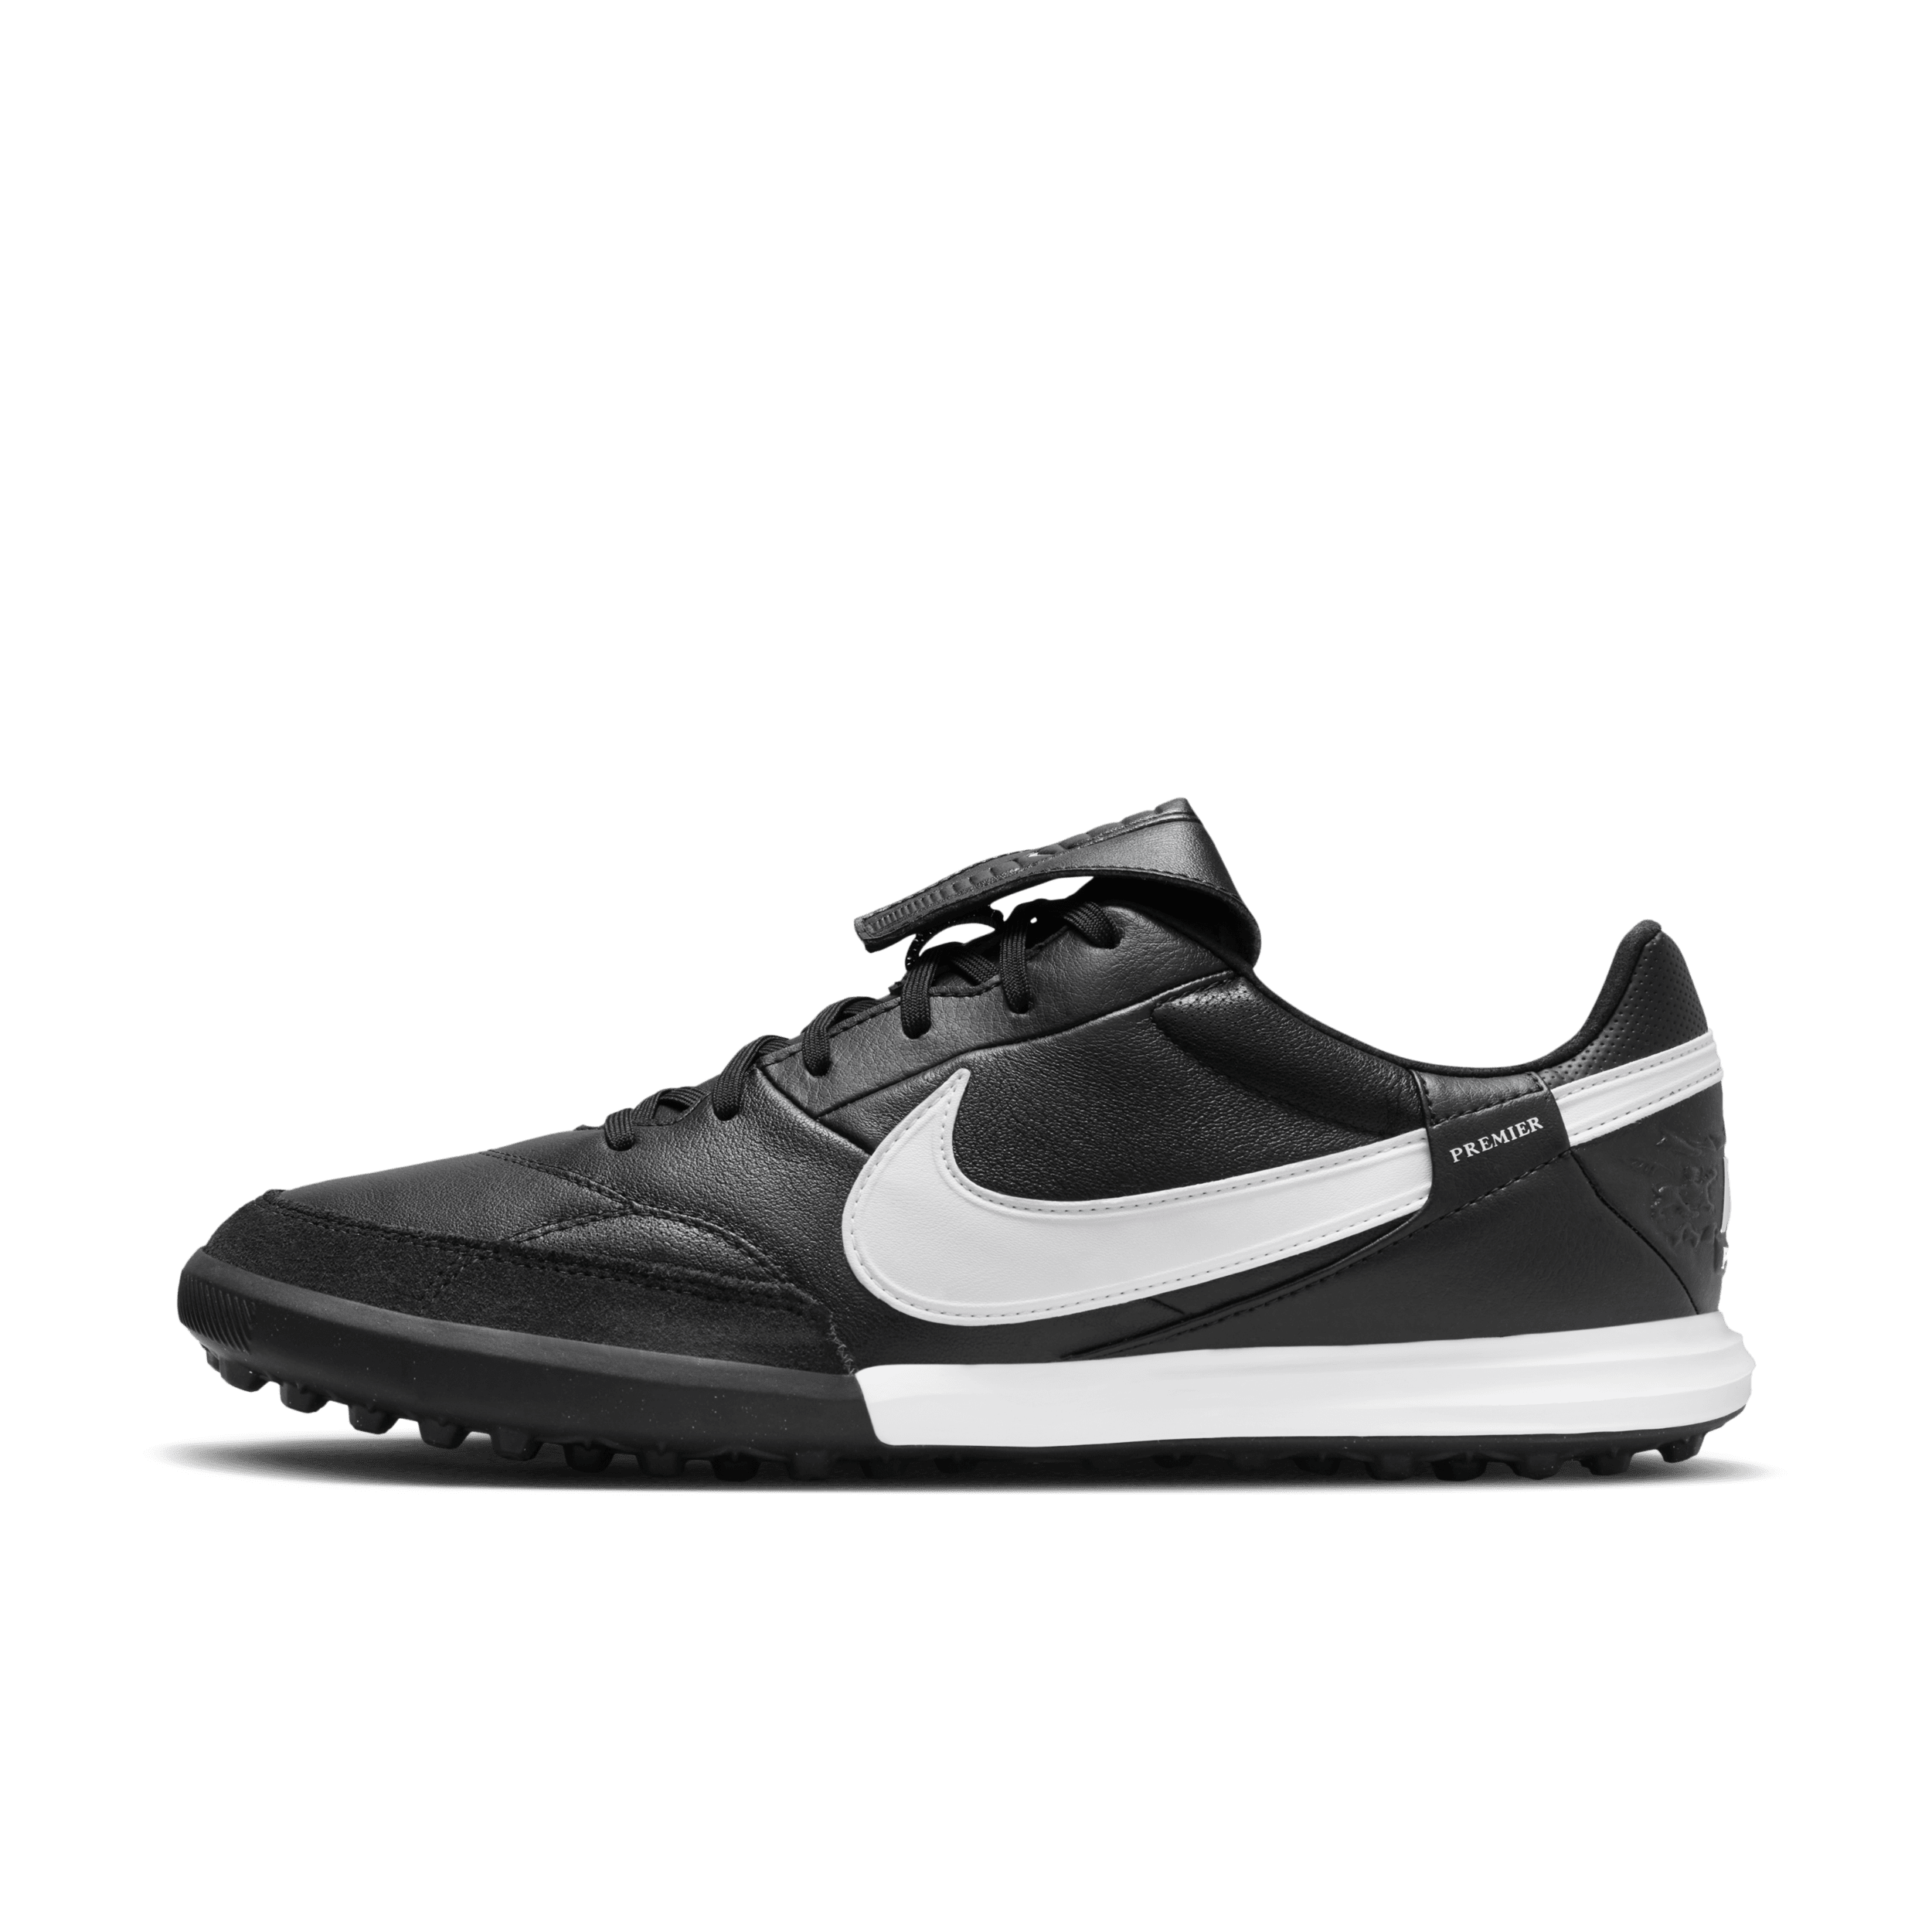 NikePremier 3 low-top voetbalschoenen (turf) - Zwart